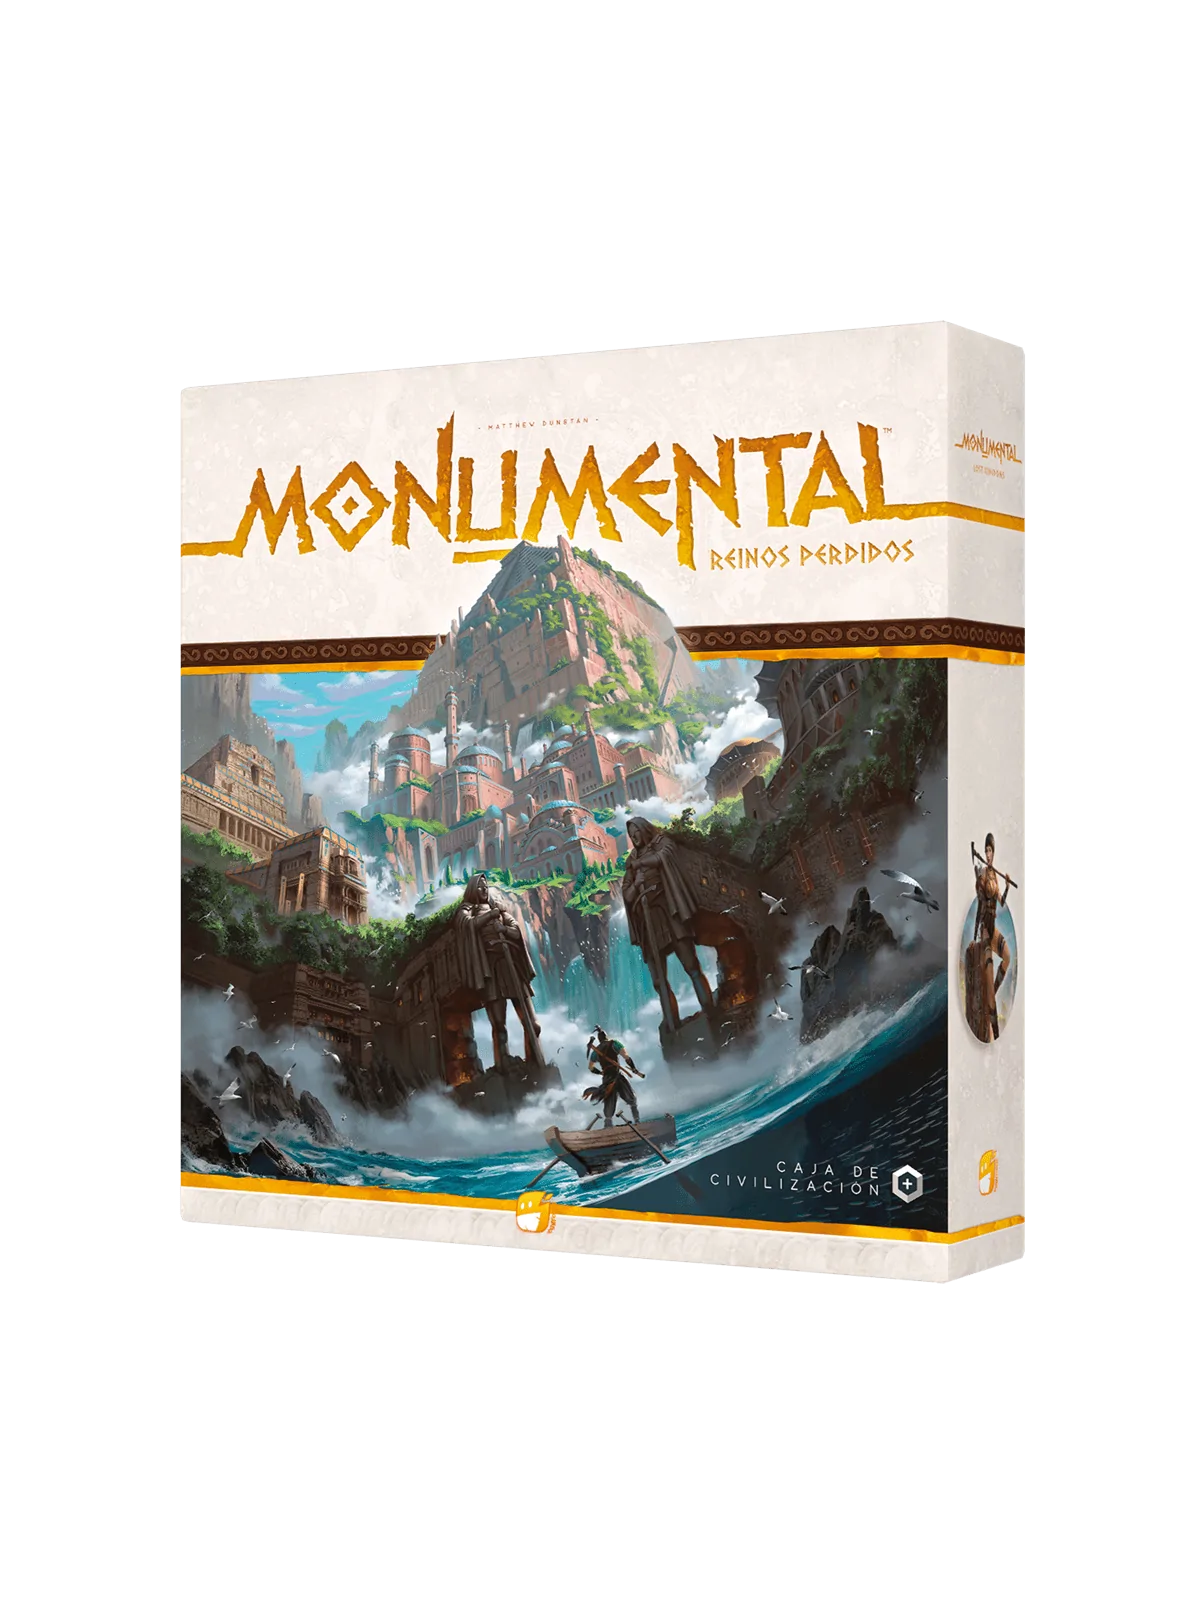 Comprar Monumental: Reinos Perdidos barato al mejor precio 53,99 € de 